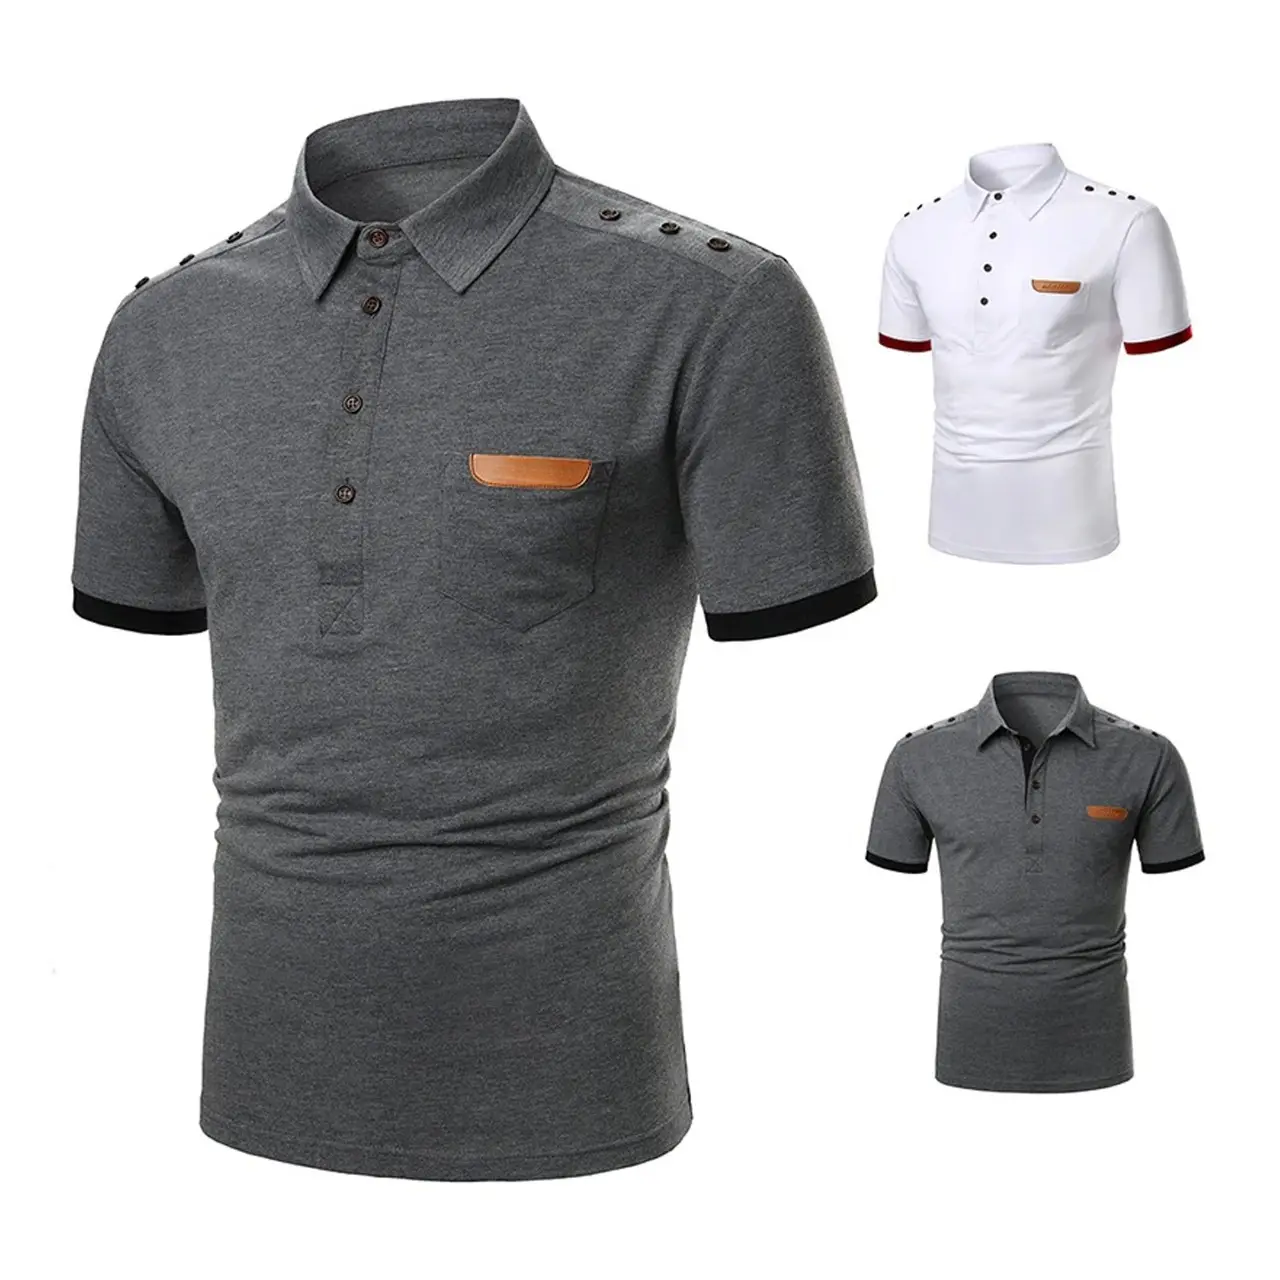 مصنع صنع بالجملة رخيصة الثمن قمصان بولو 2022 شعار مخصص الرجال تسامي عالية الصف بولو T قميص للبيع